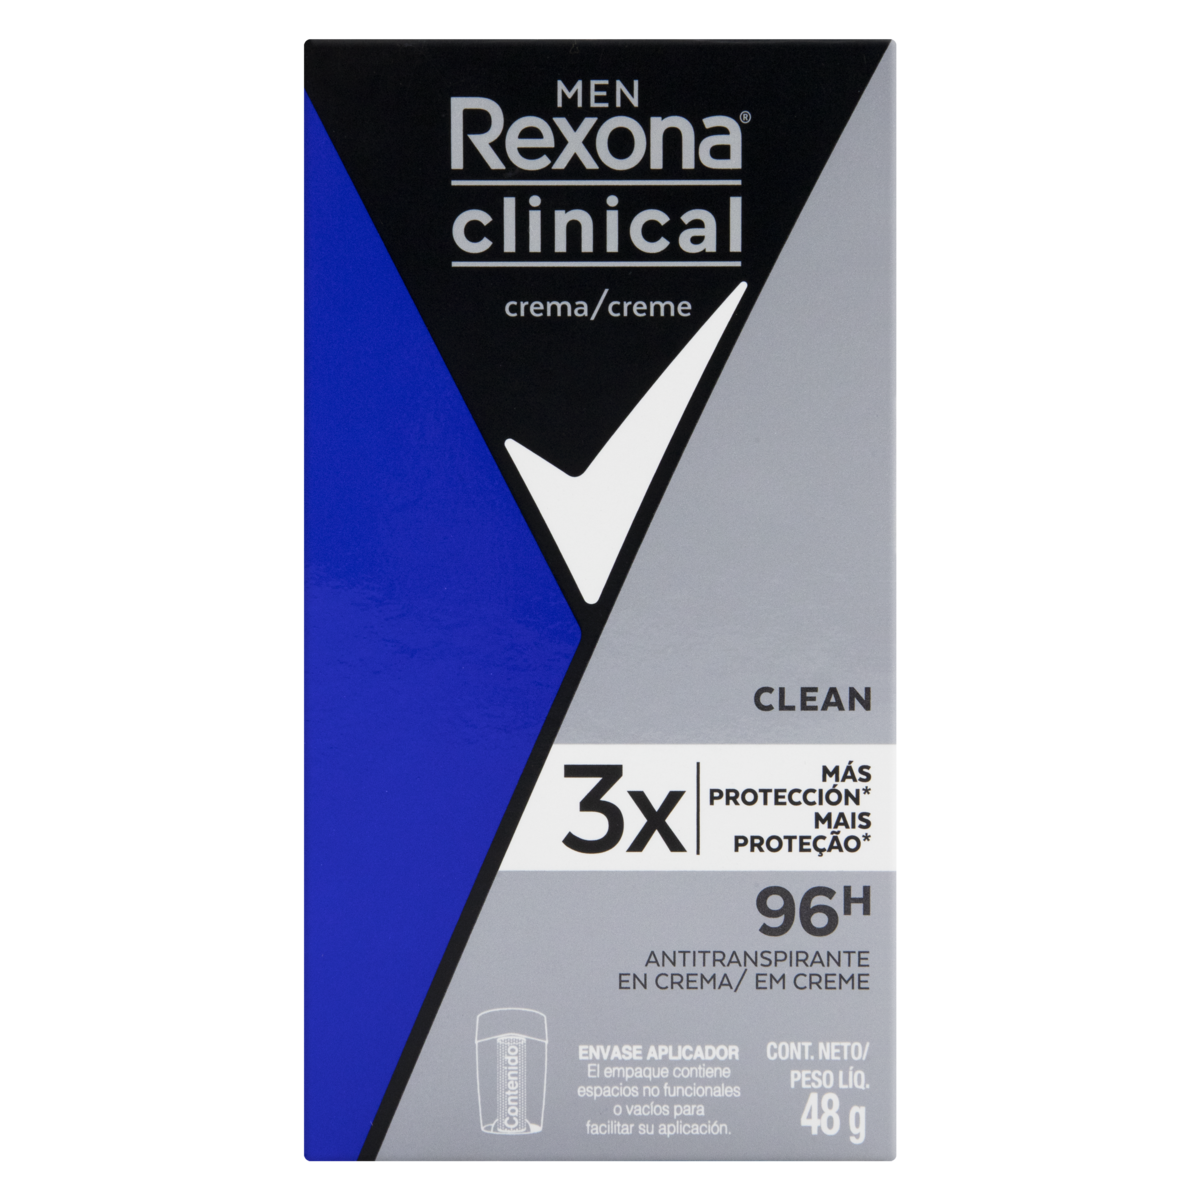 Rexona clinical - Men